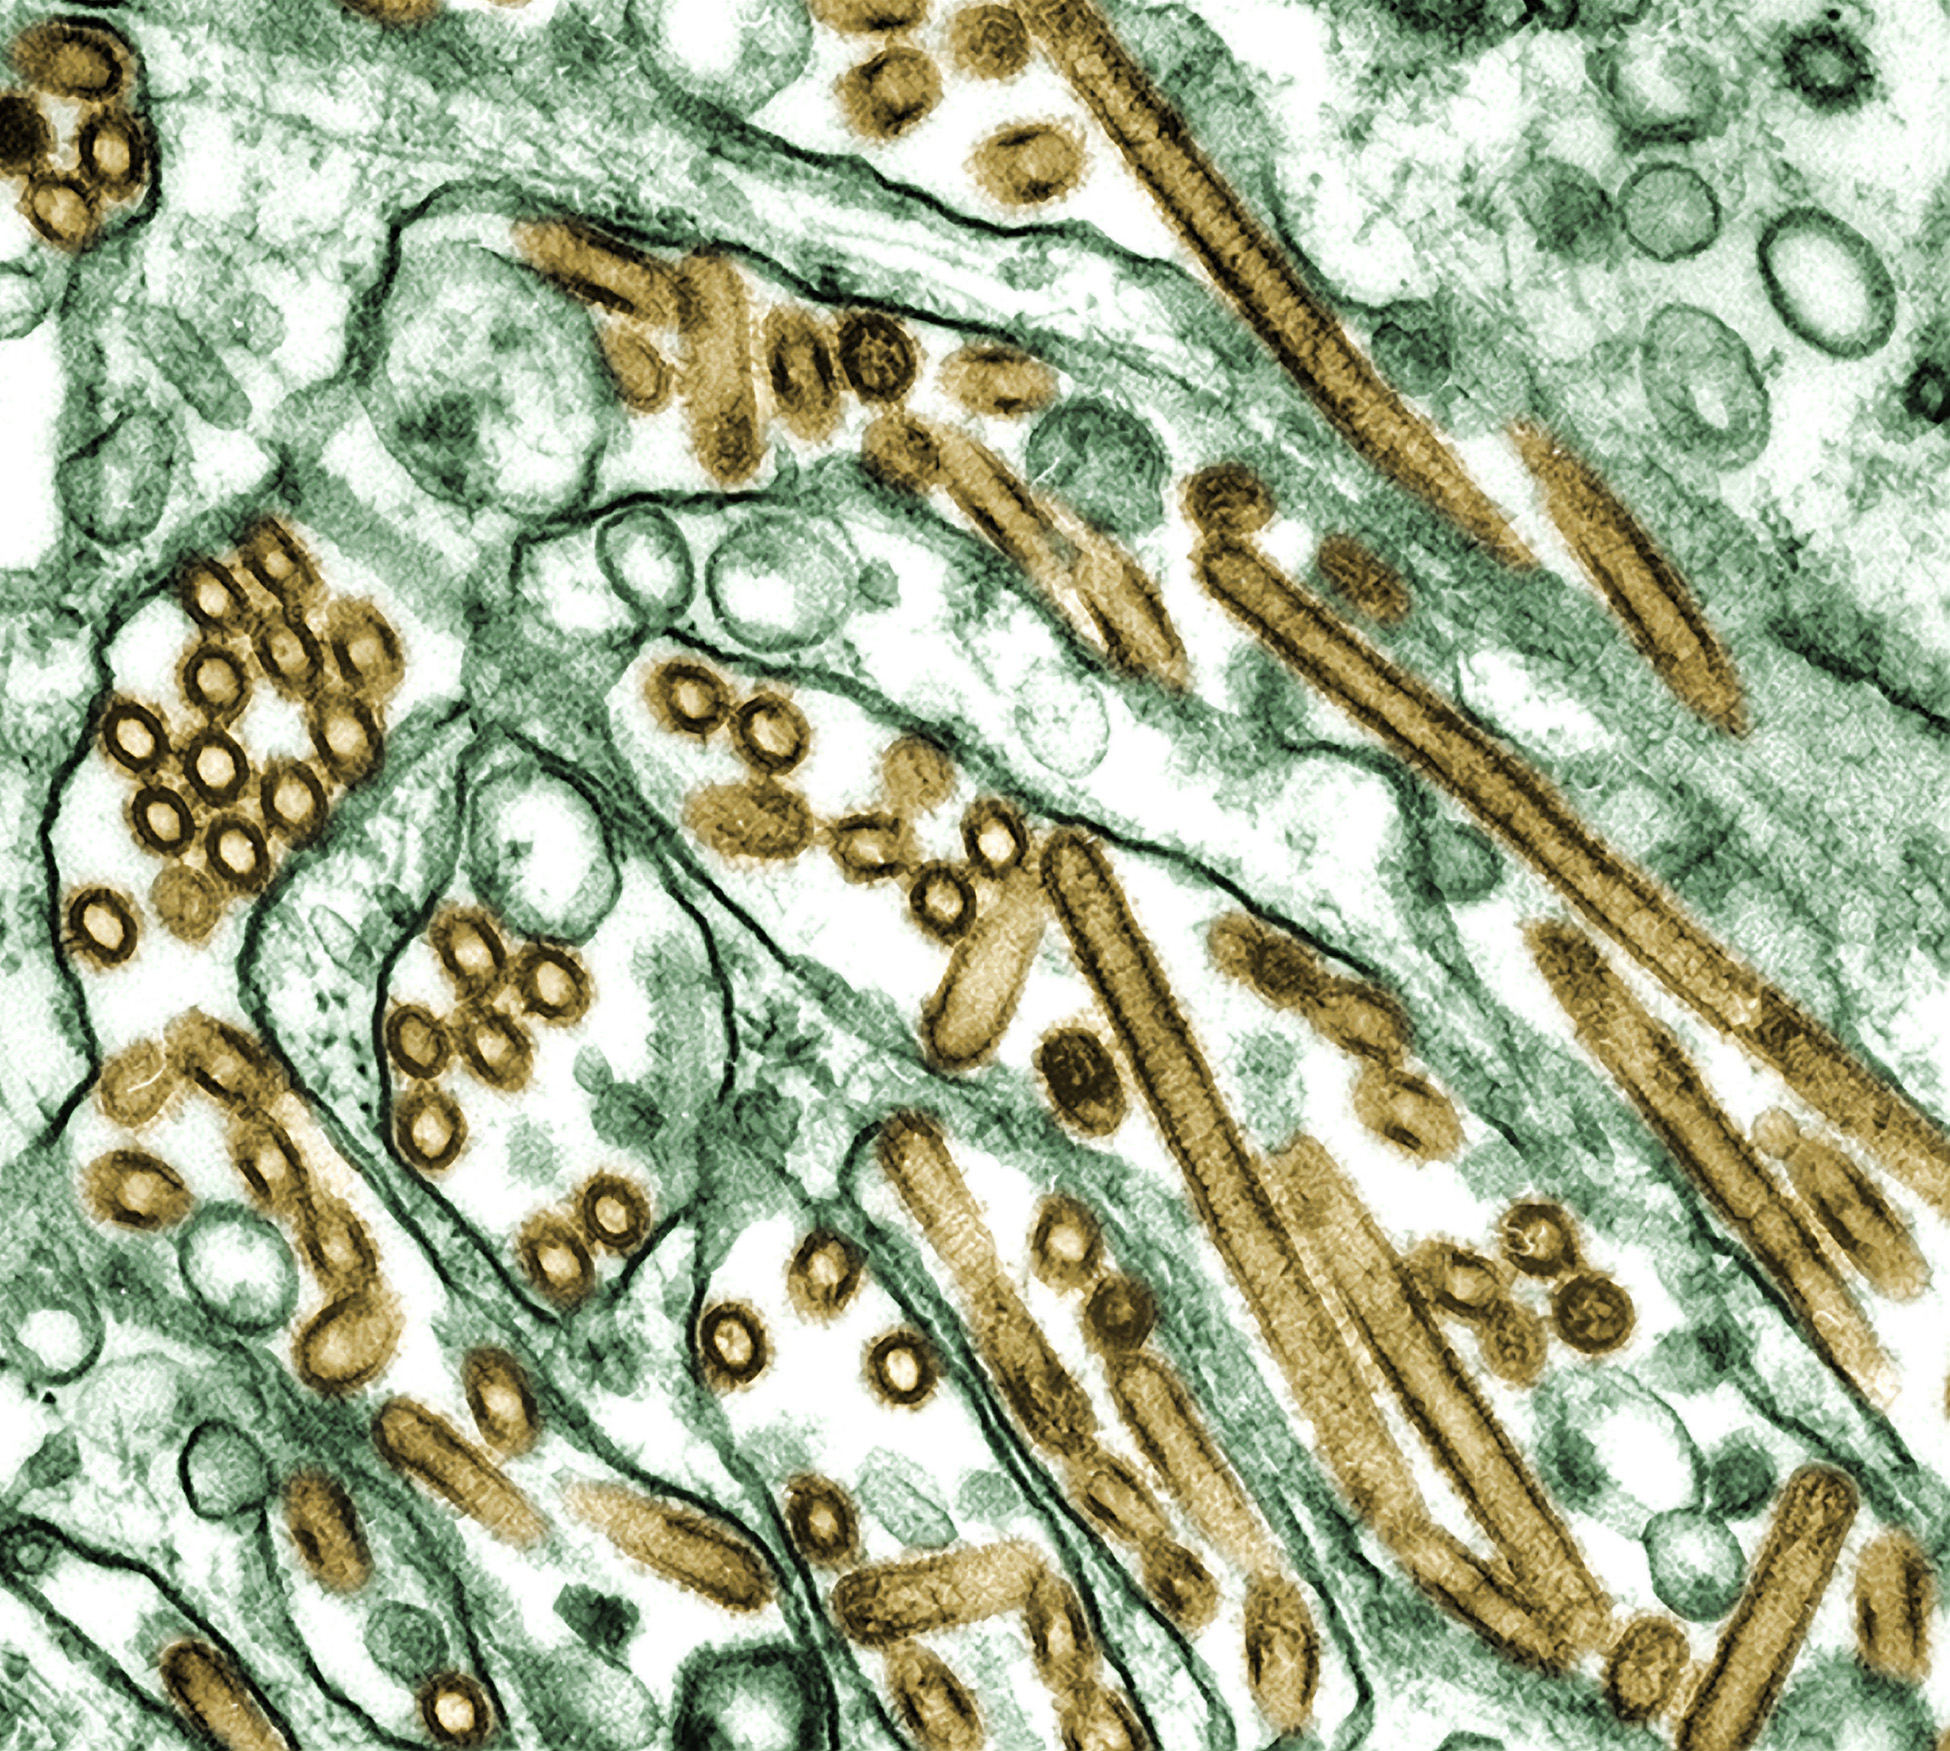 Πανδημία μπορούν να προκαλέσουν πέντε σταδιακές μεταλλάξεις του ιού της γρίπης των πτηνών